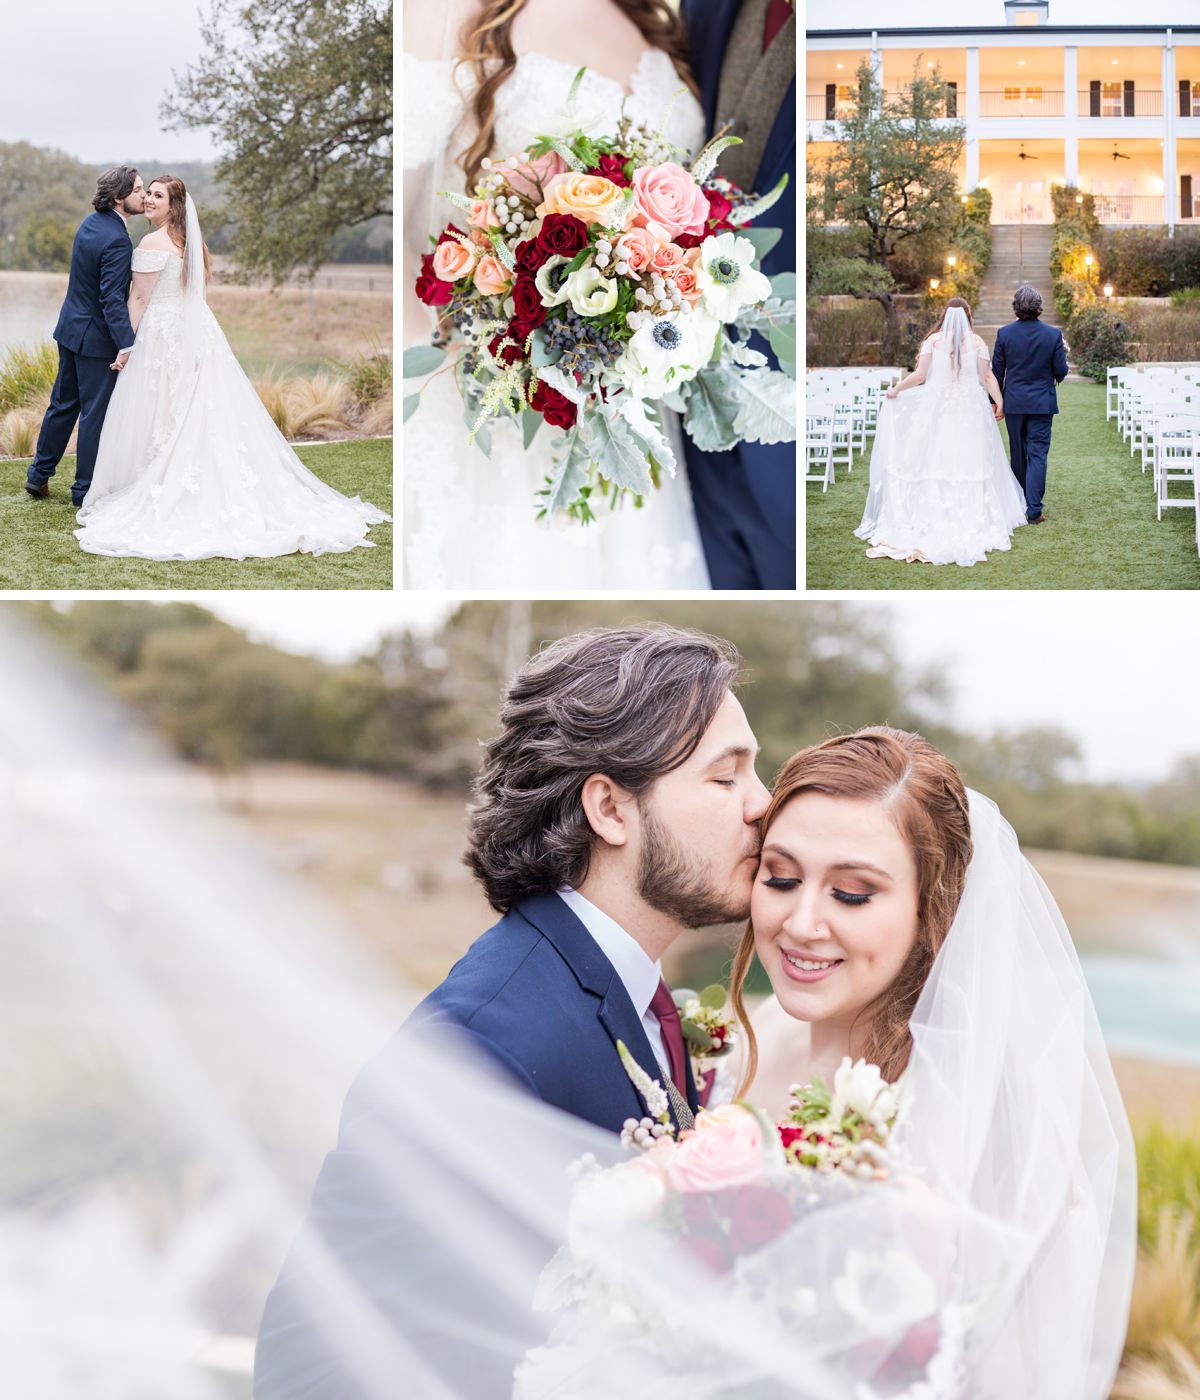 A Burgundy, Navy and Coral Wedding at Kendall Plantation in Boerne, TX by Dawn Elizabeth Studios, Boerne Wedding Photographer